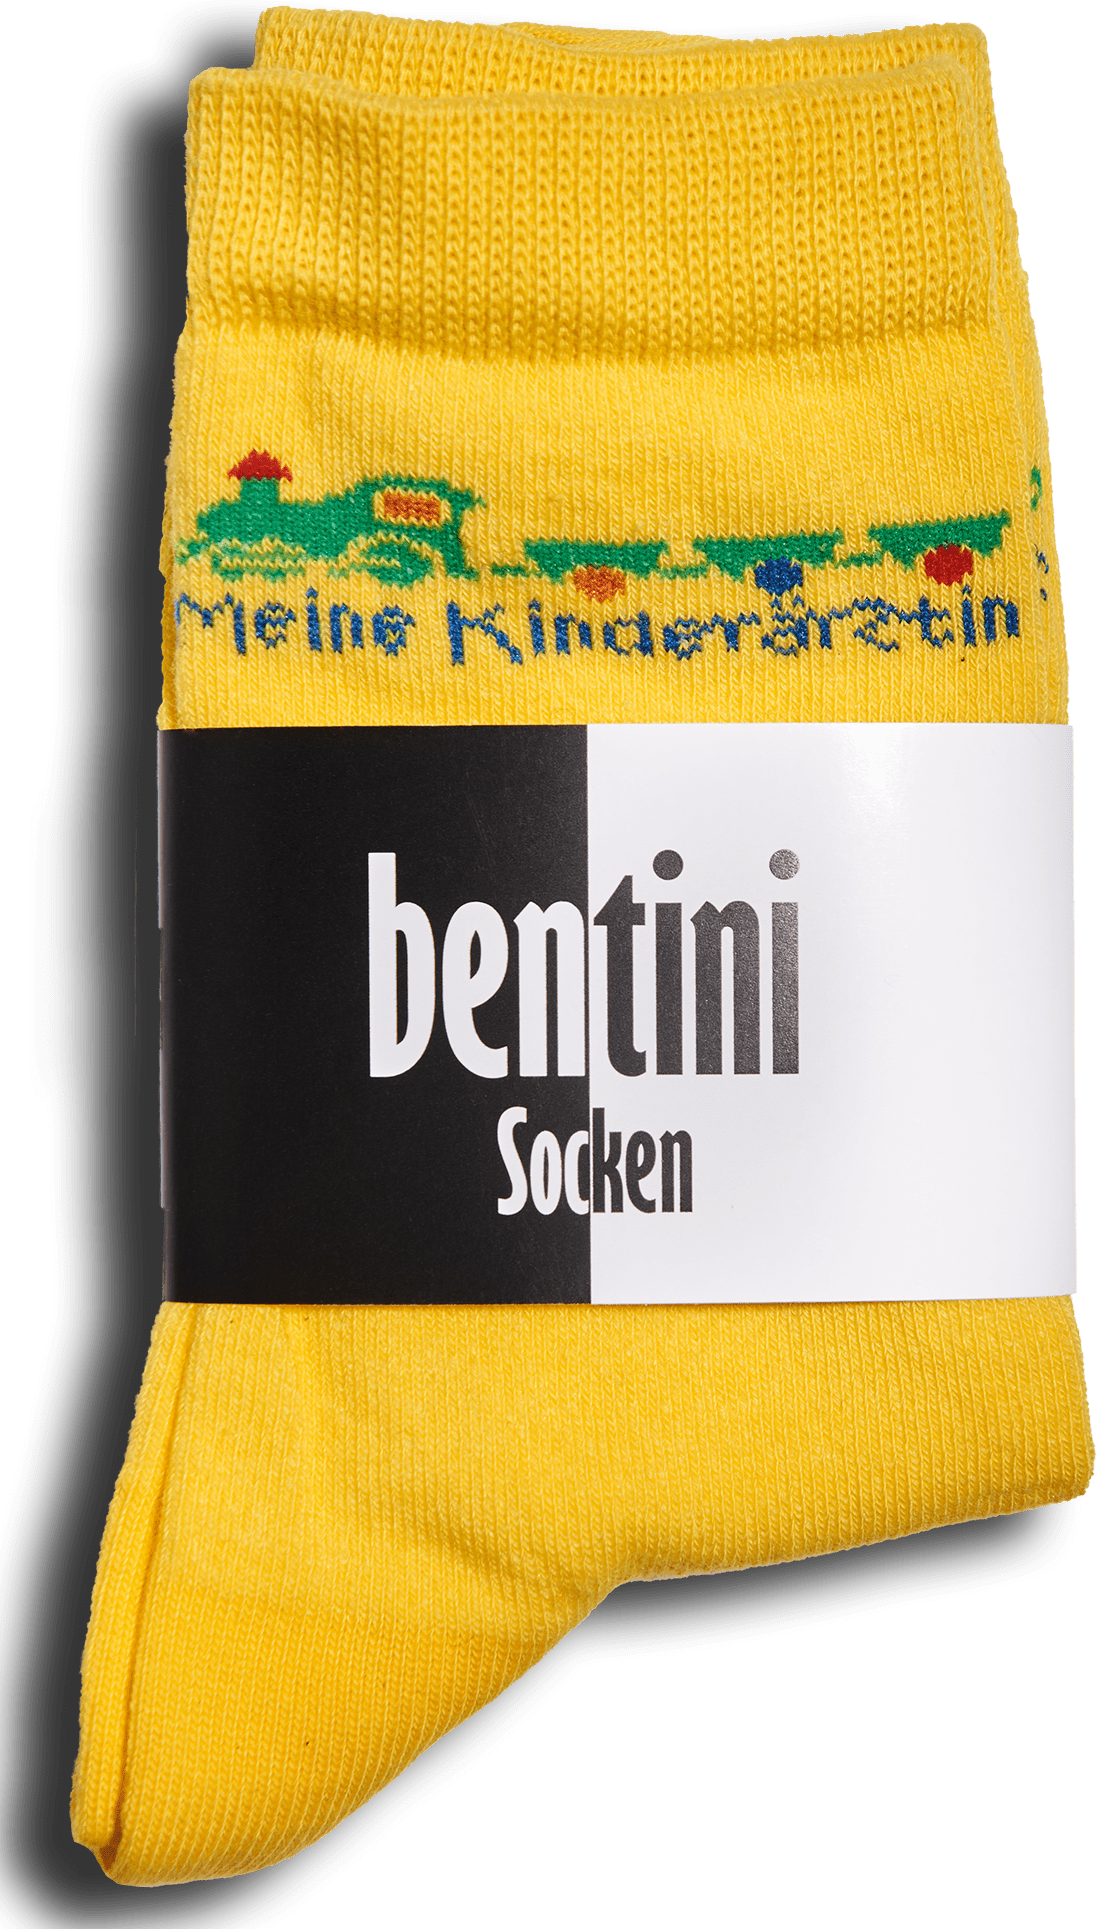 Bentini Socken-31